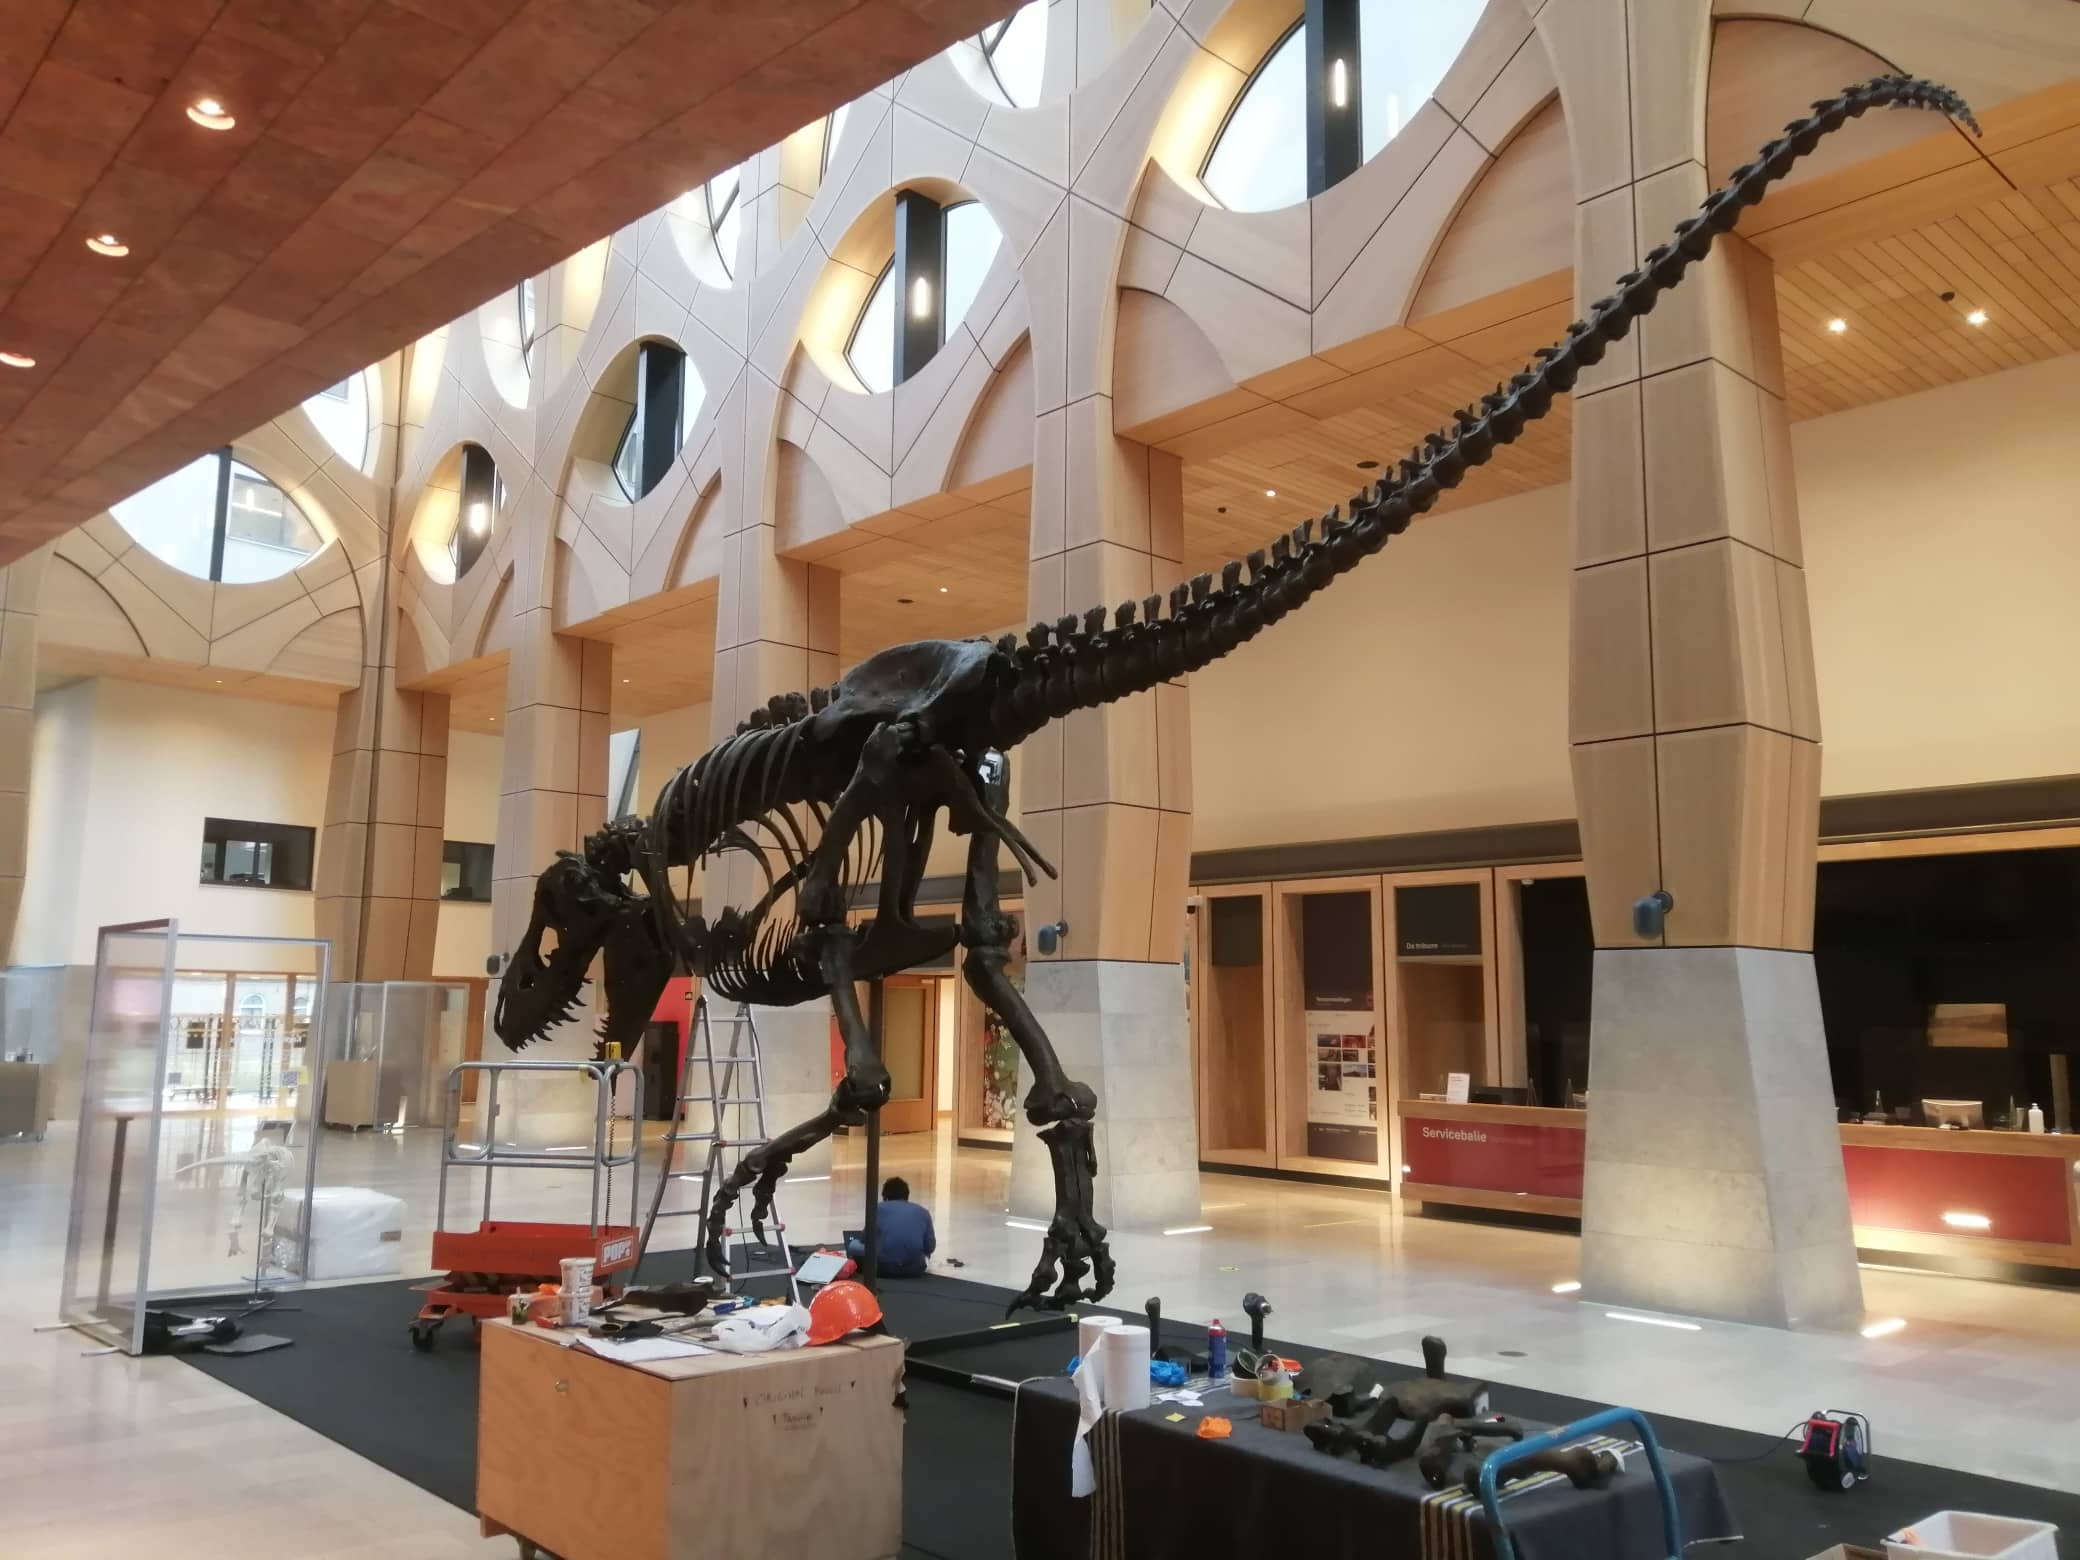 Fossilien & Dinosaurier | Lackier- und Montagearbeiten 3D-print T-Rex Trix | Naturalis Biodiversity Center | Nagasaki Japan